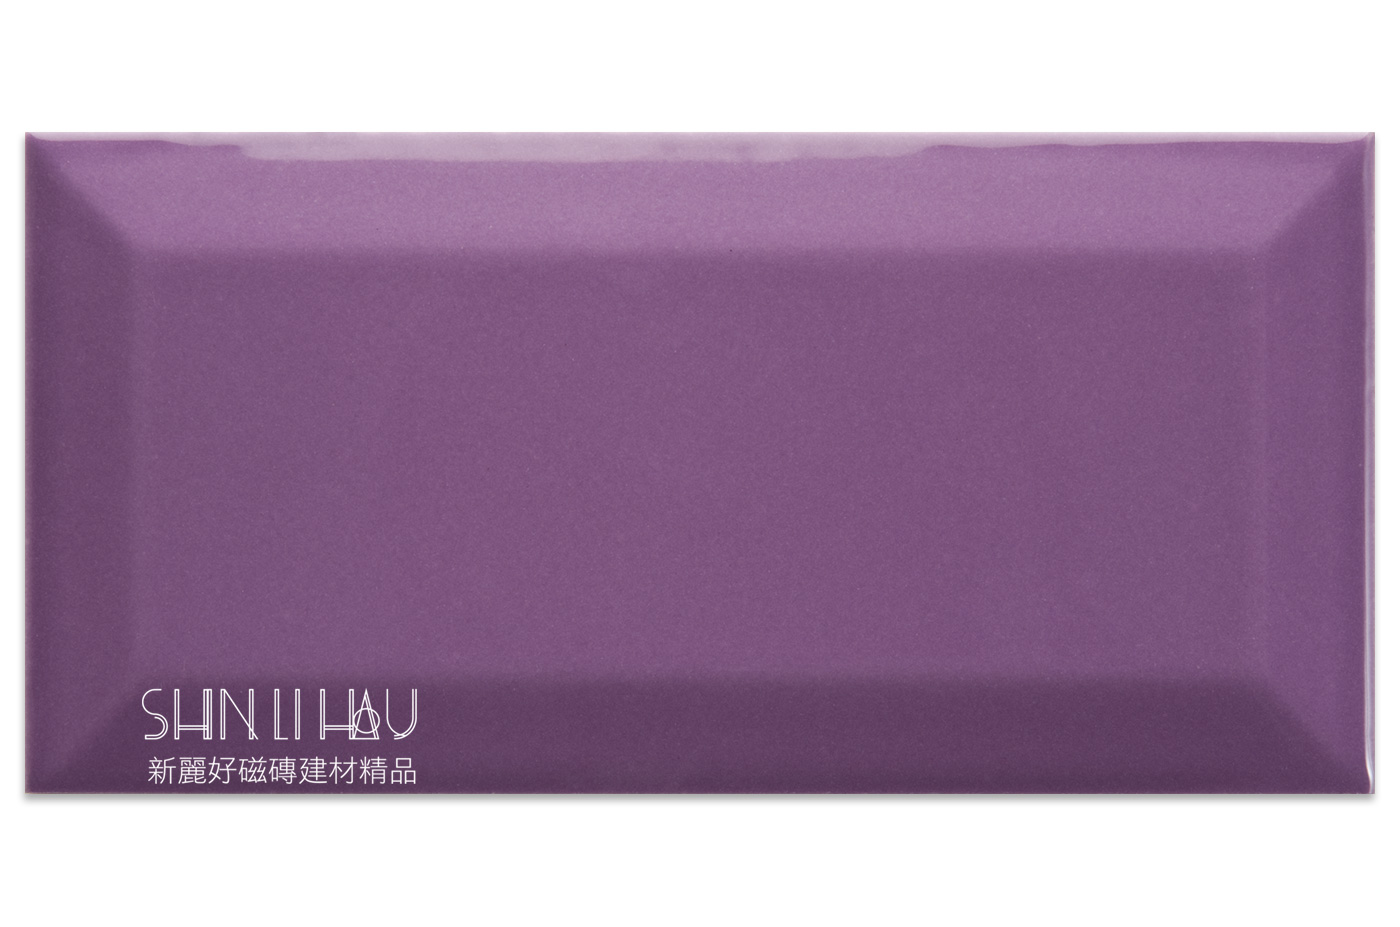 廚房磁磚-原萃地鐵磚 - 紫